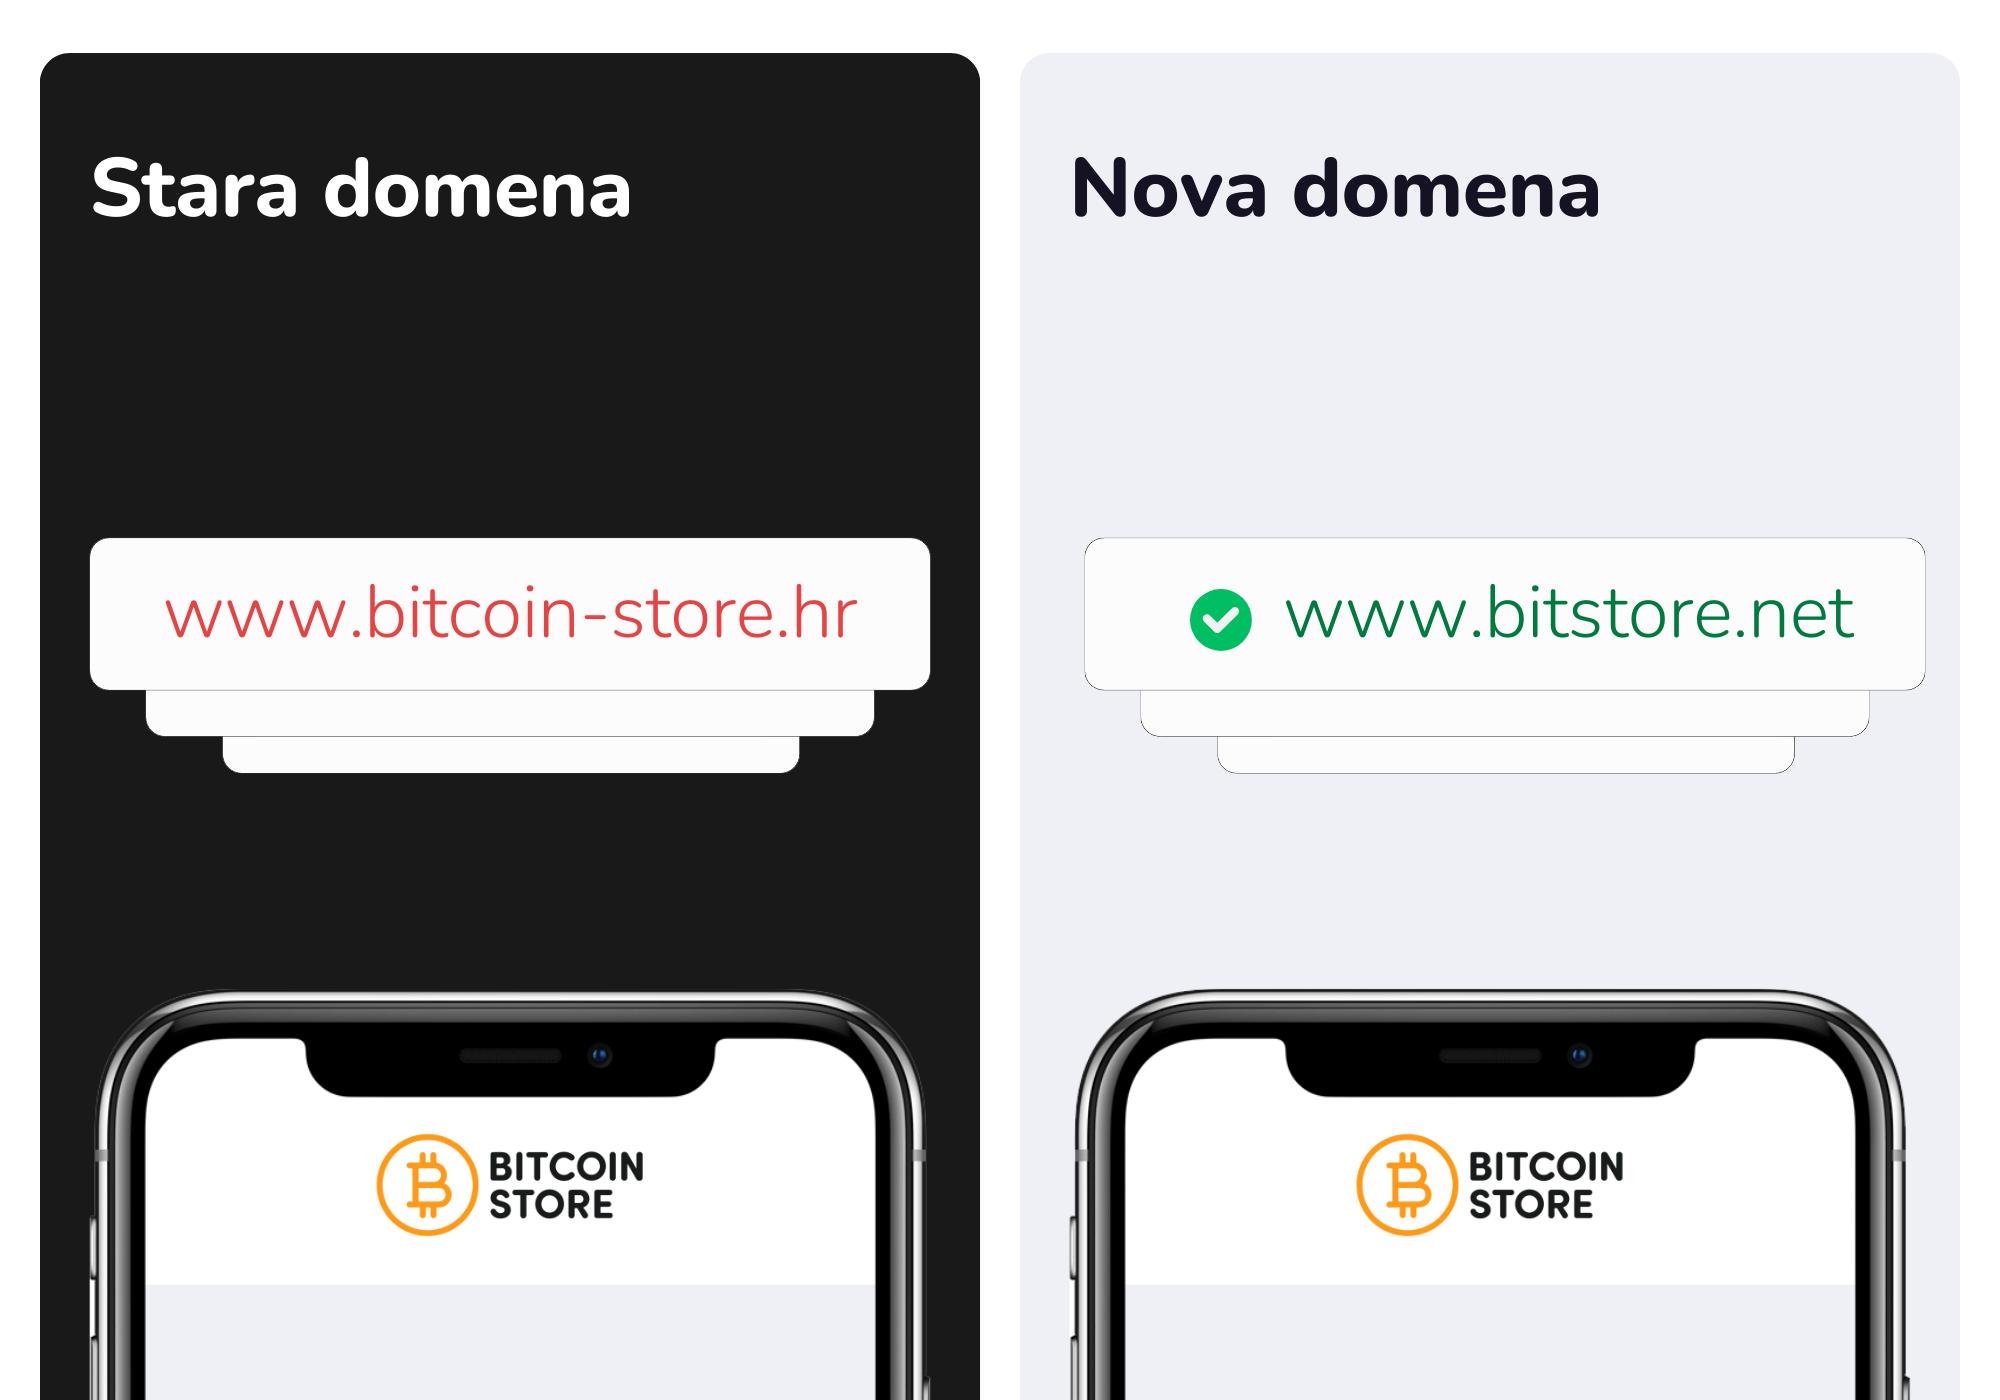 Bitcoin Store mjenjačnica gjde možete jednostavno kupiti, prodati i pohraniti kriptovalute, promijenila je svoju domenu na www.bitstore.net